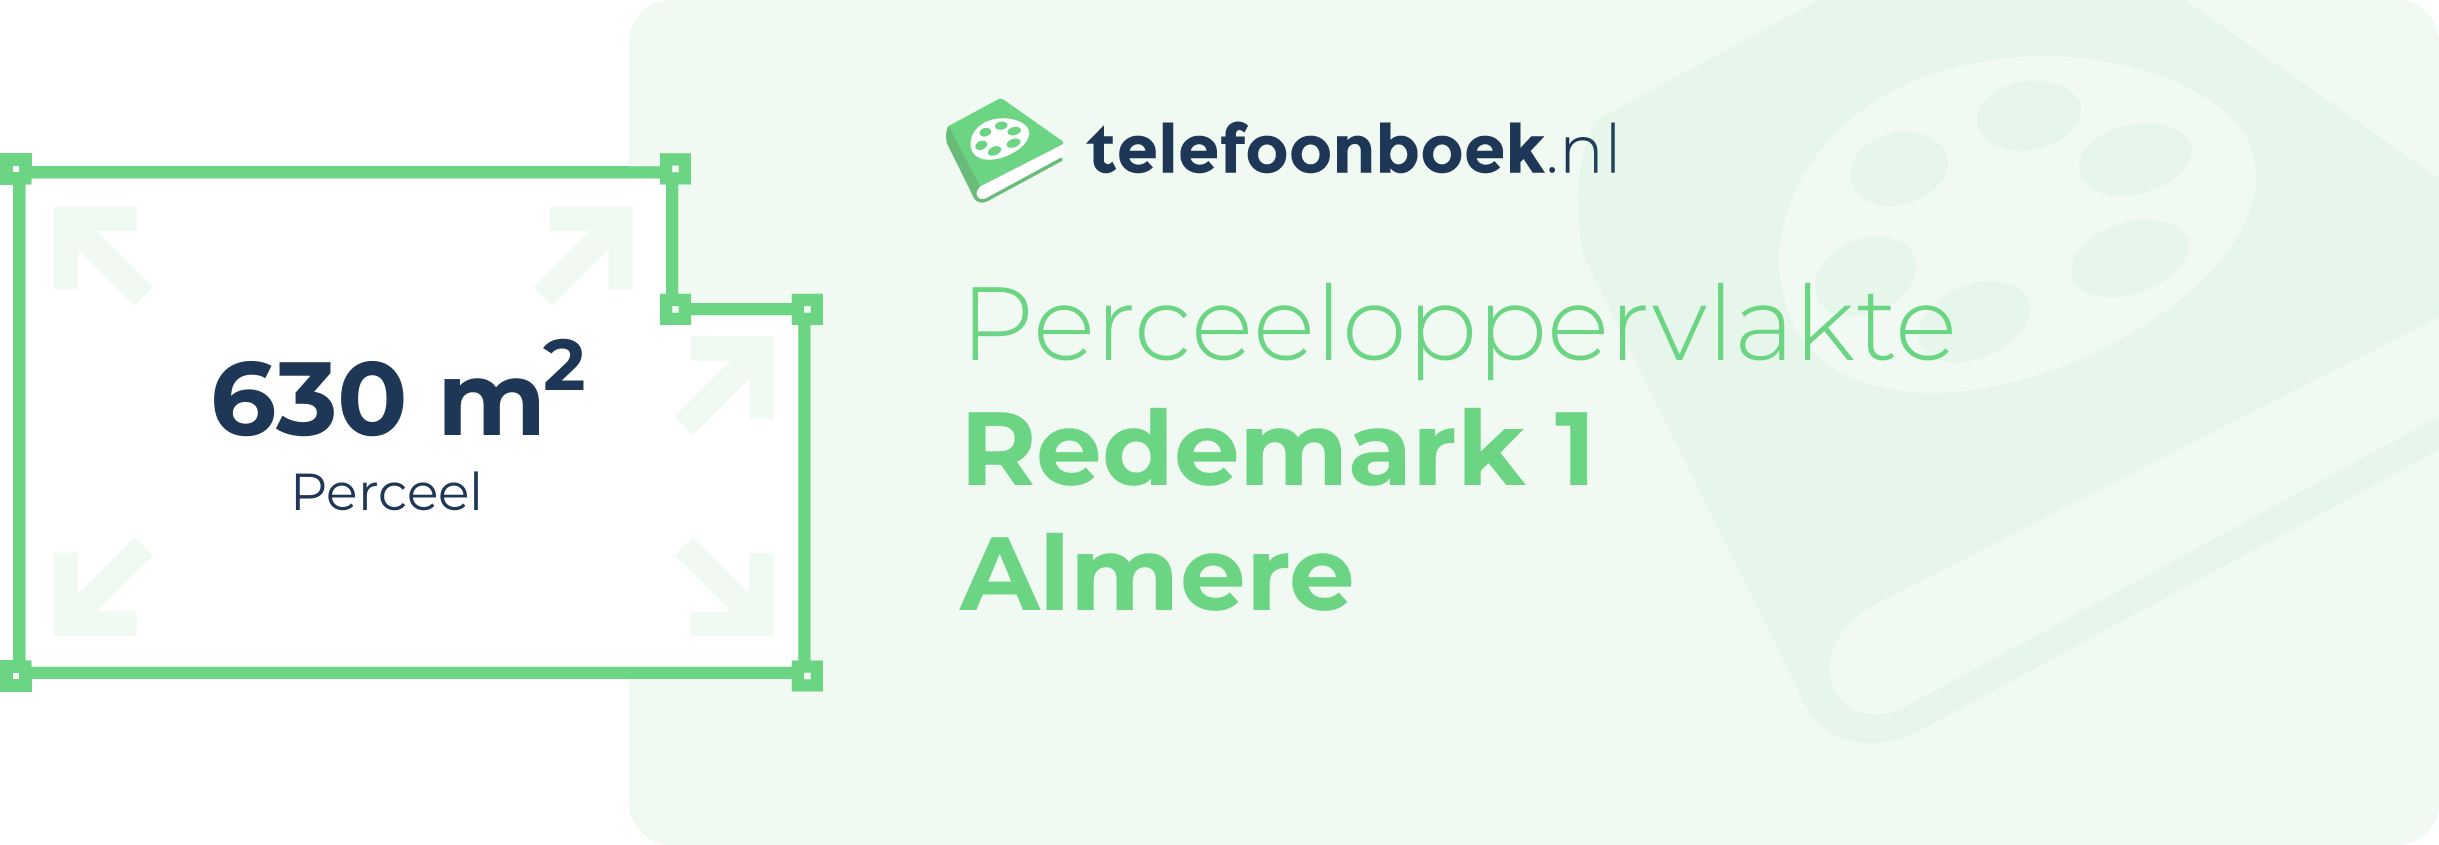 Perceeloppervlakte Redemark 1 Almere